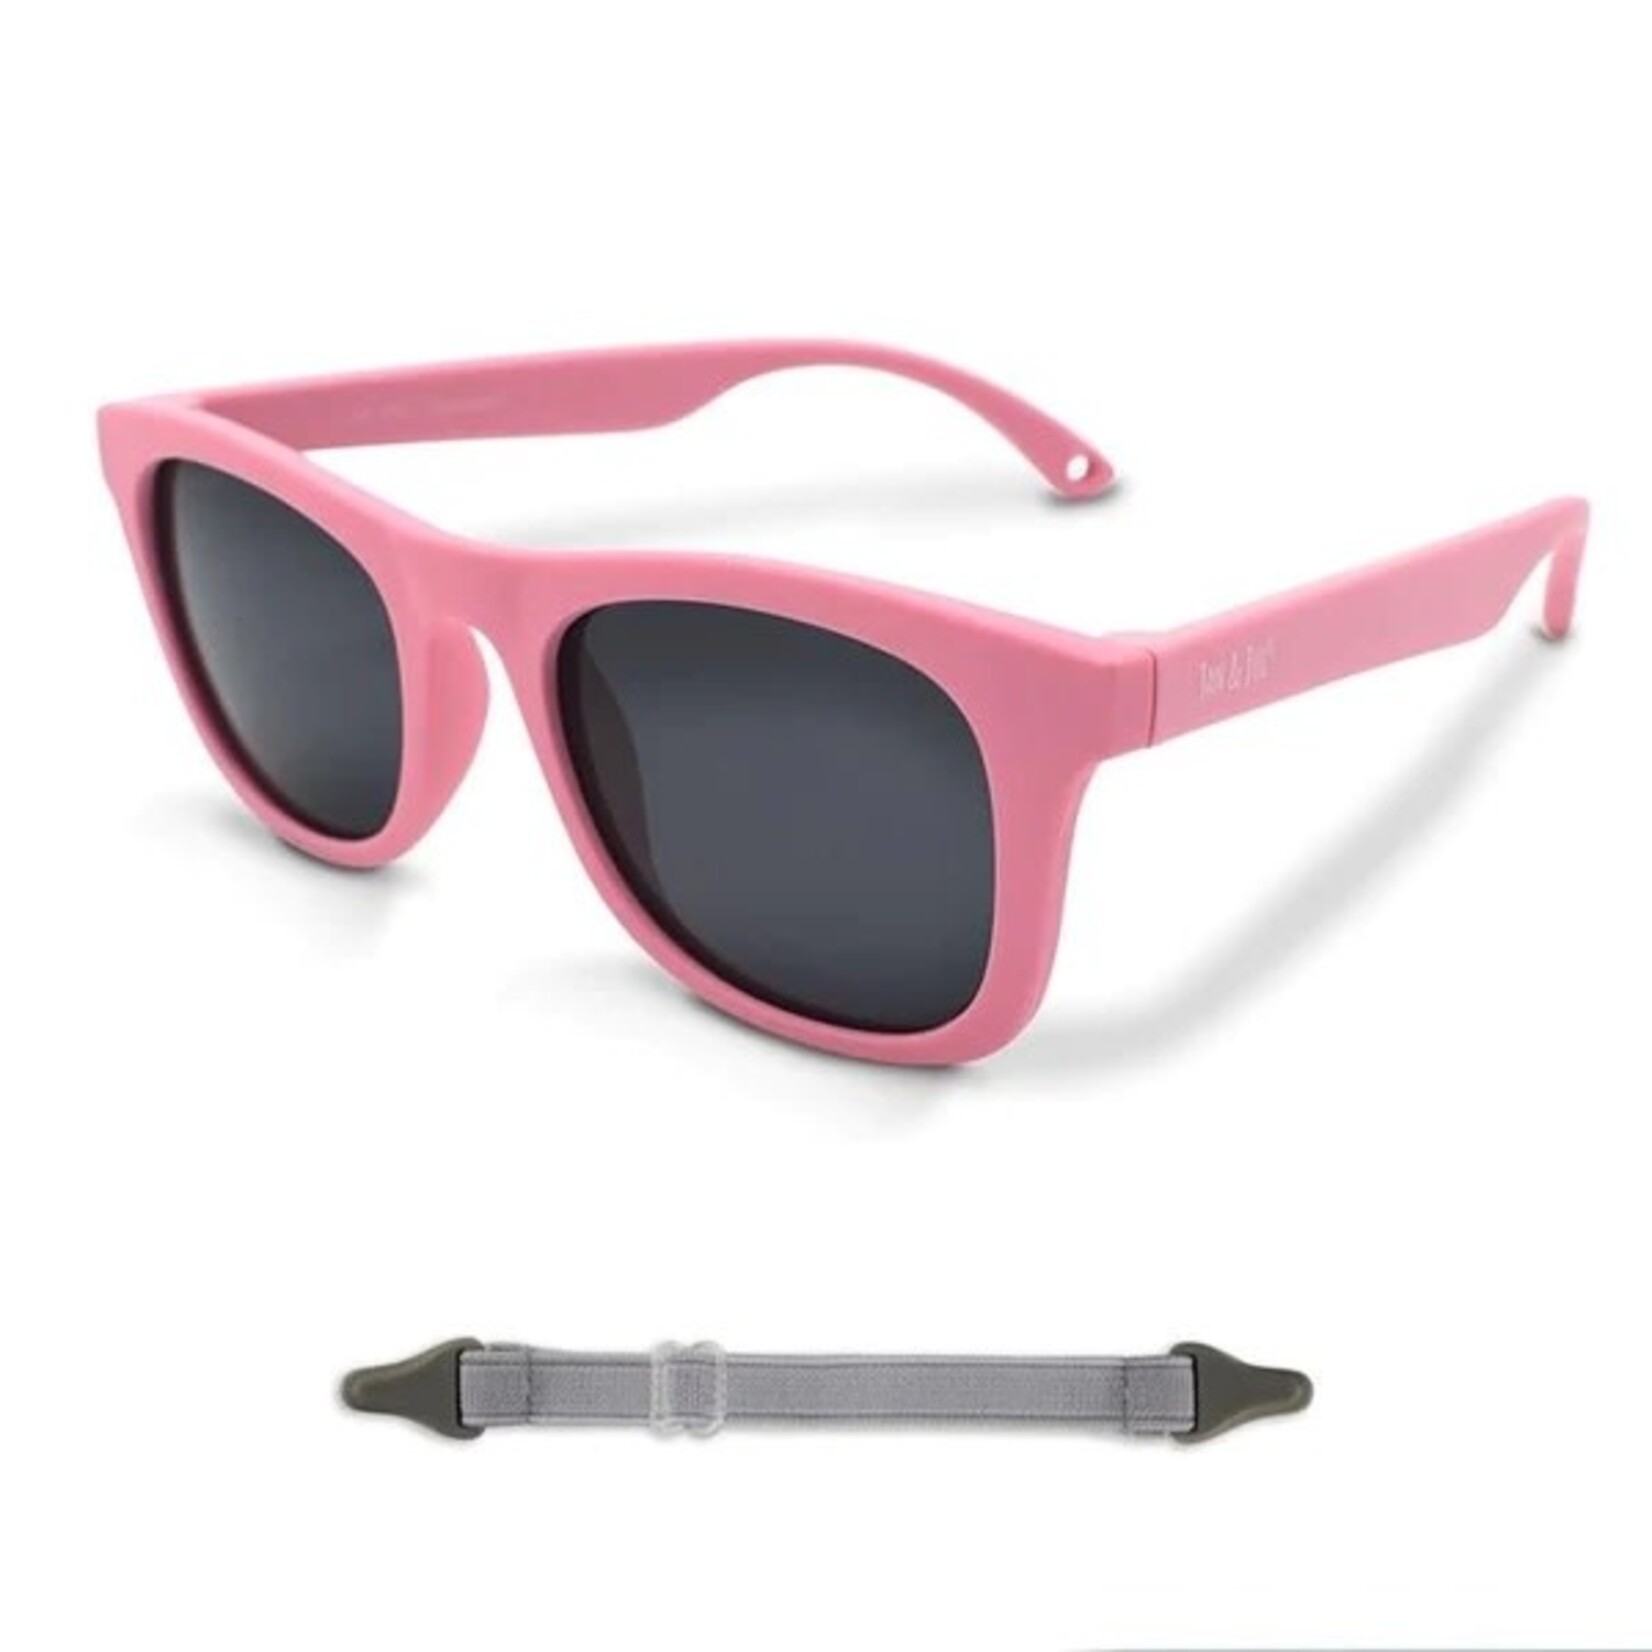 Jan & Jul Sunglasses Urban Explorer - Peachy Pink (0-2Y)